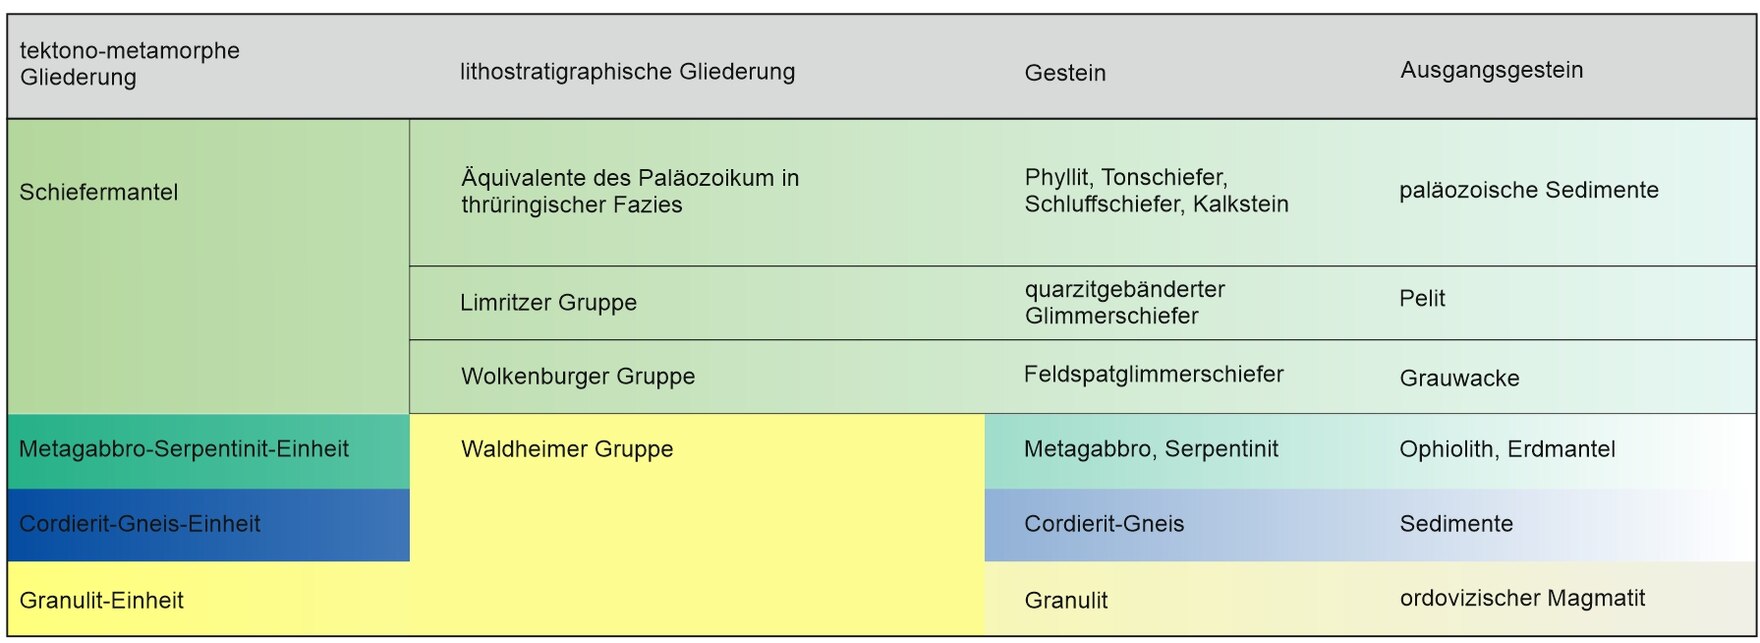 Gegenüberstellung der Einheitsnamen nach tektono-metamorpher Gliederung (links, Rötzler 1992) und lithostratigraphischer Gliederung (rechts, Neumann und Wiefel 1978).